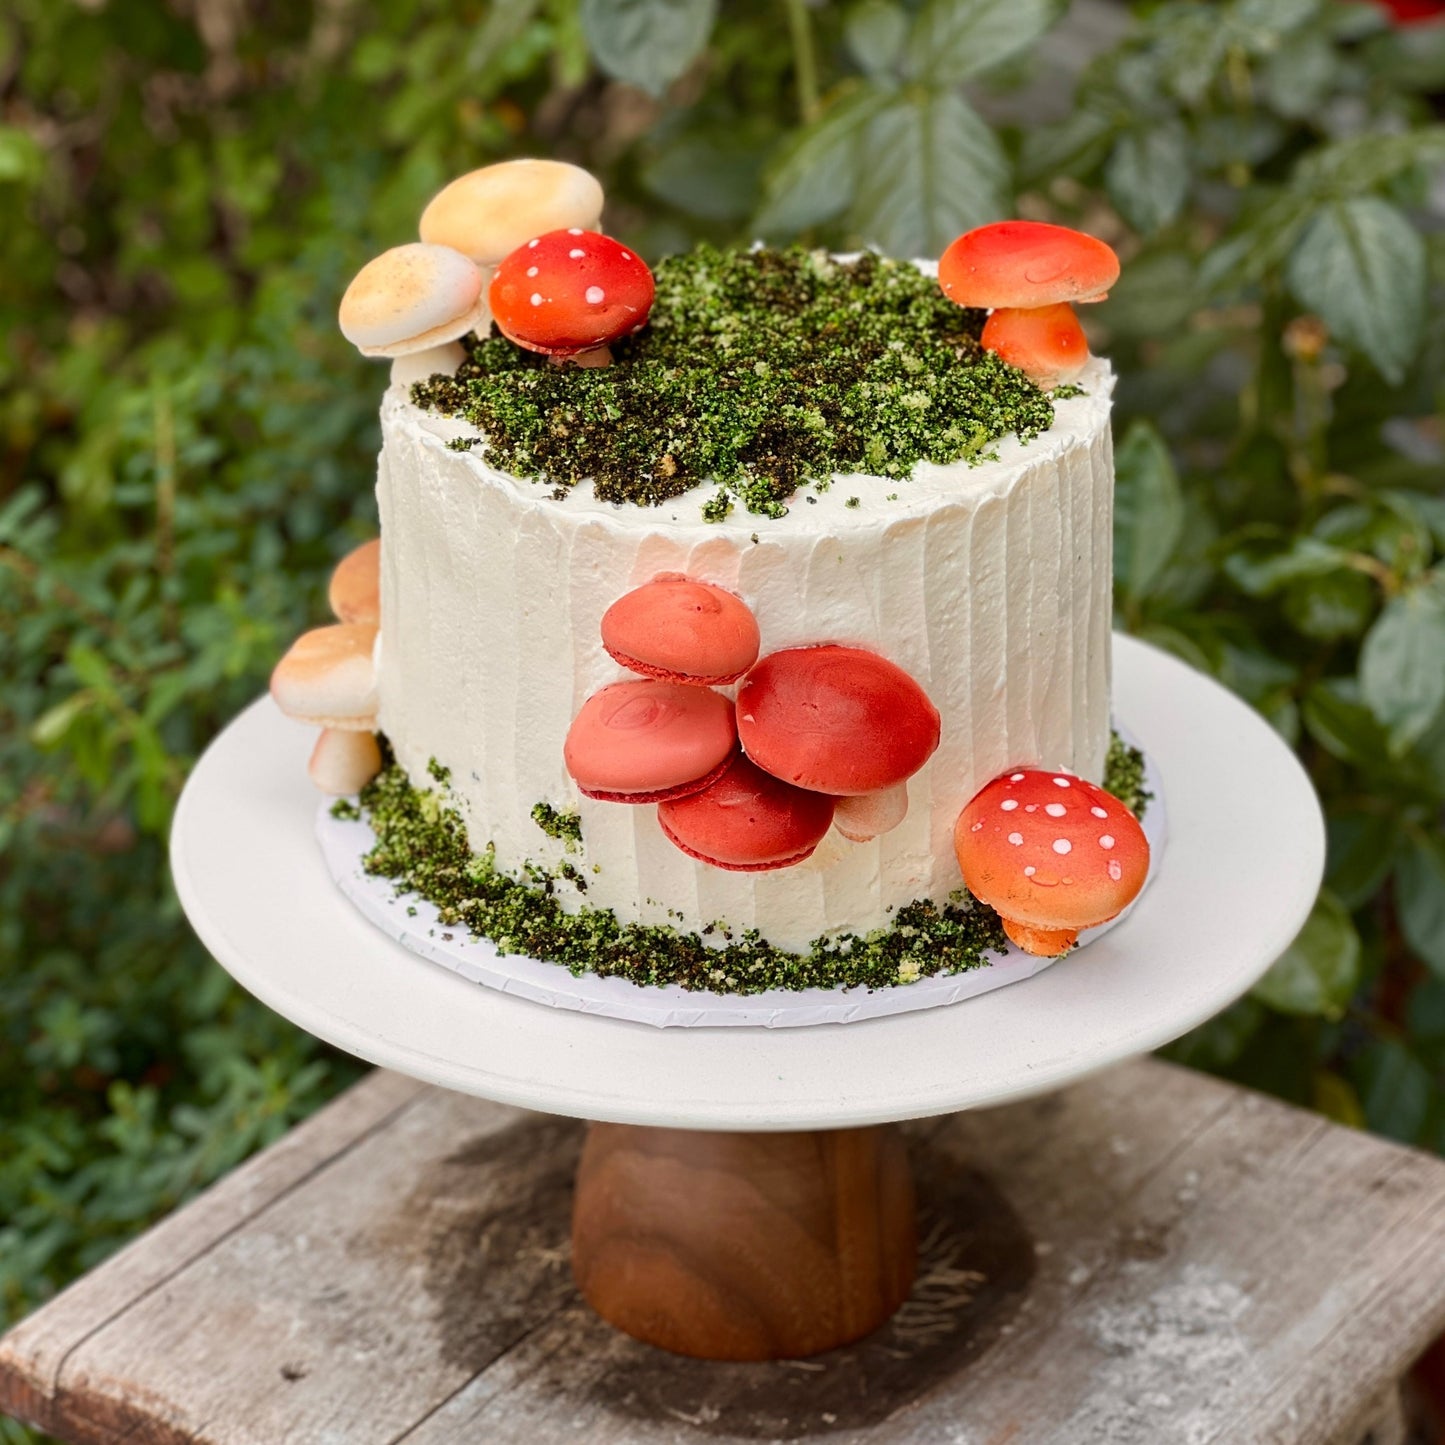 Mushroom themed cake with white base